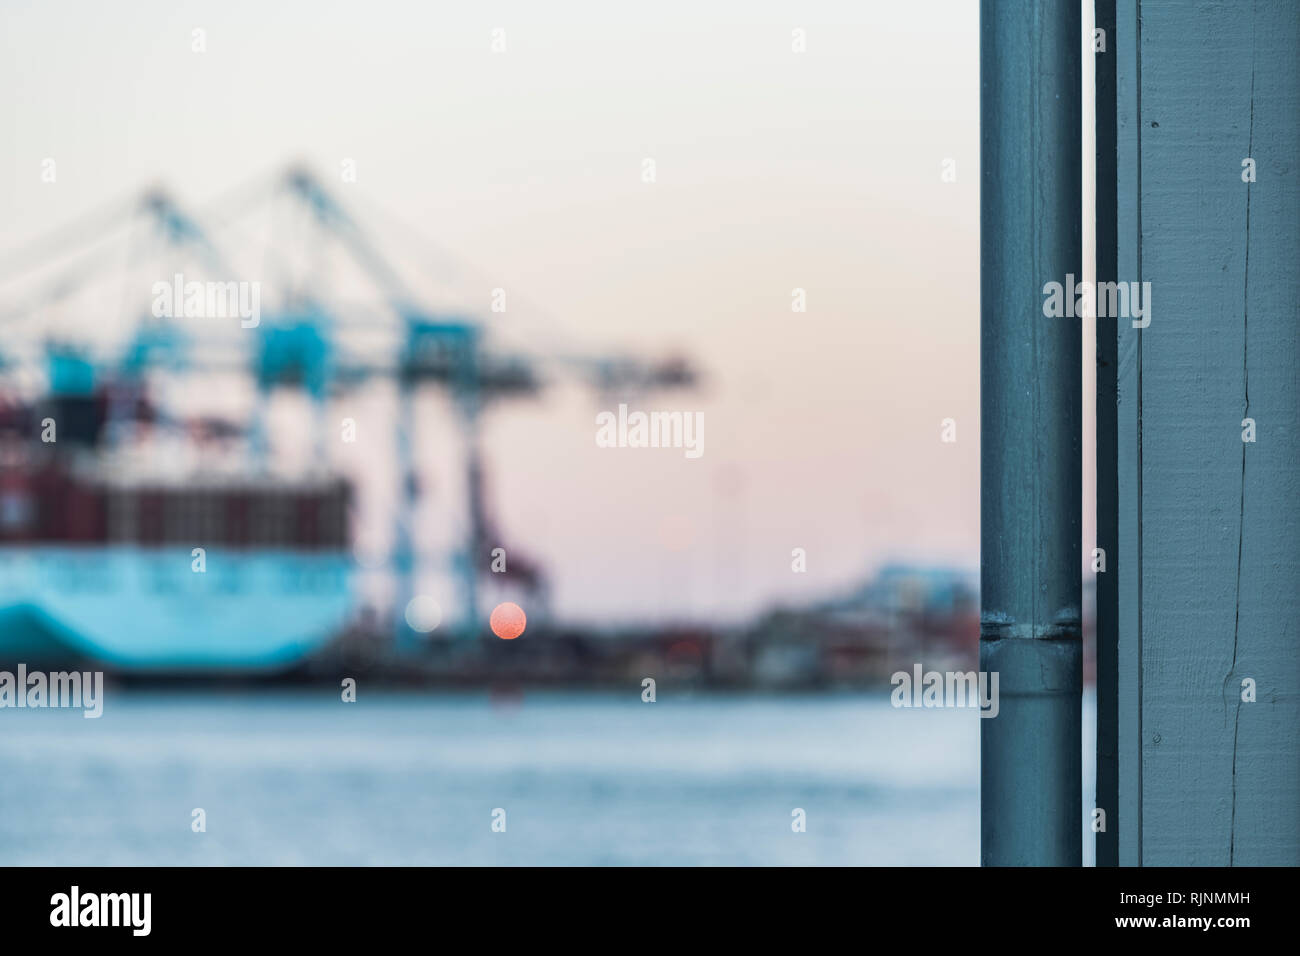 Abflussrohre an der Seite des Gebäudes, unscharfer Blick auf Arbeit Schiff im Hintergrund, Göteborg, Schweden, Europa Stockfoto